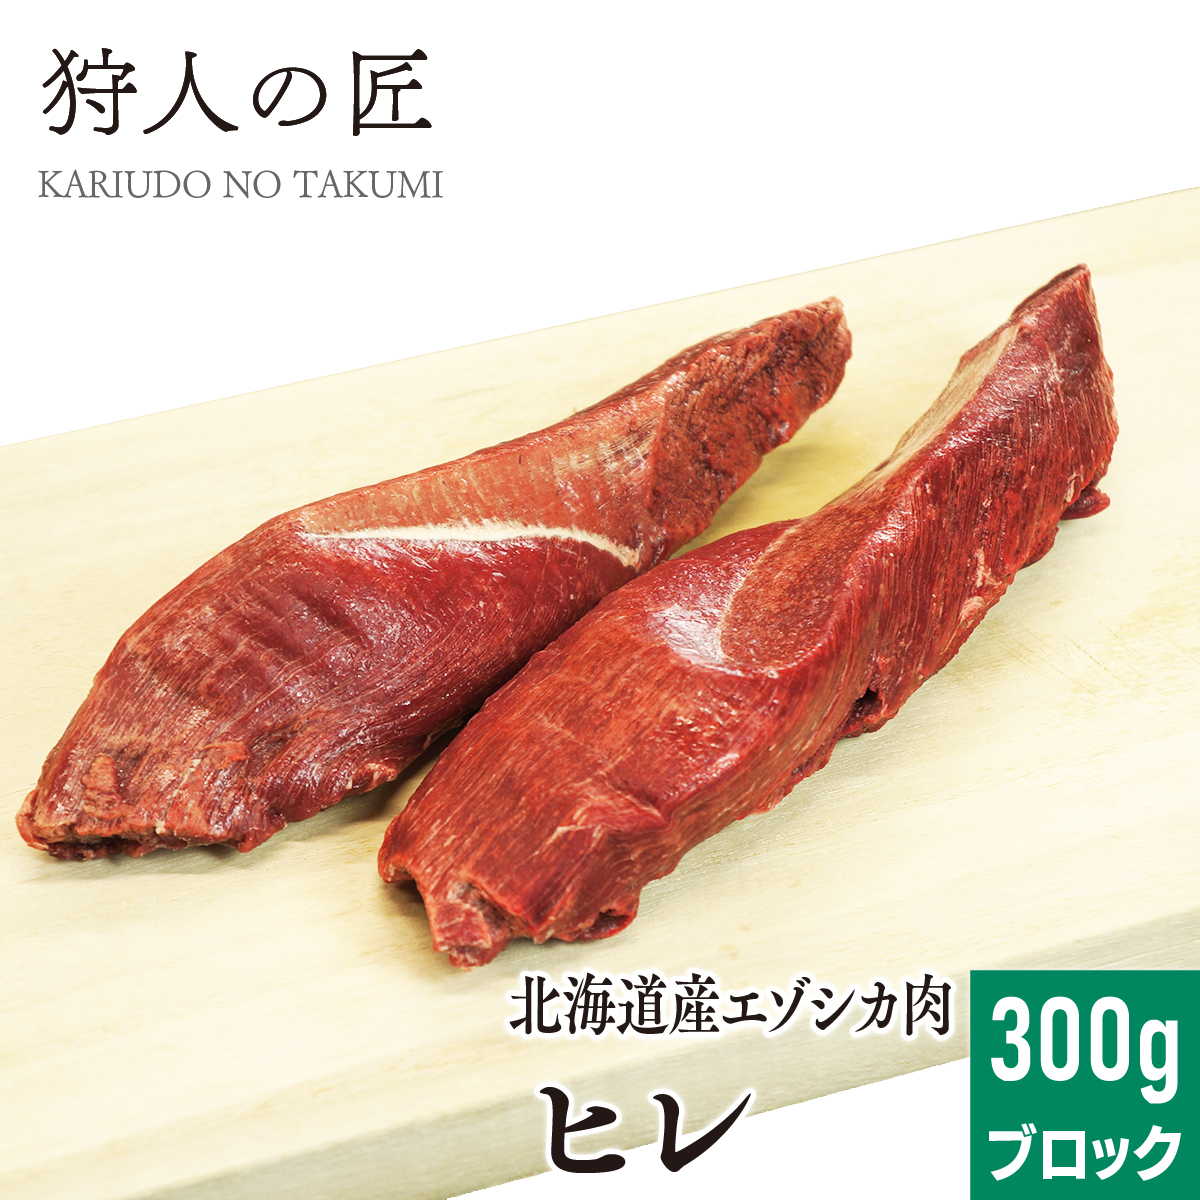 エゾ鹿肉 ヒレ肉 300g (ブロック)